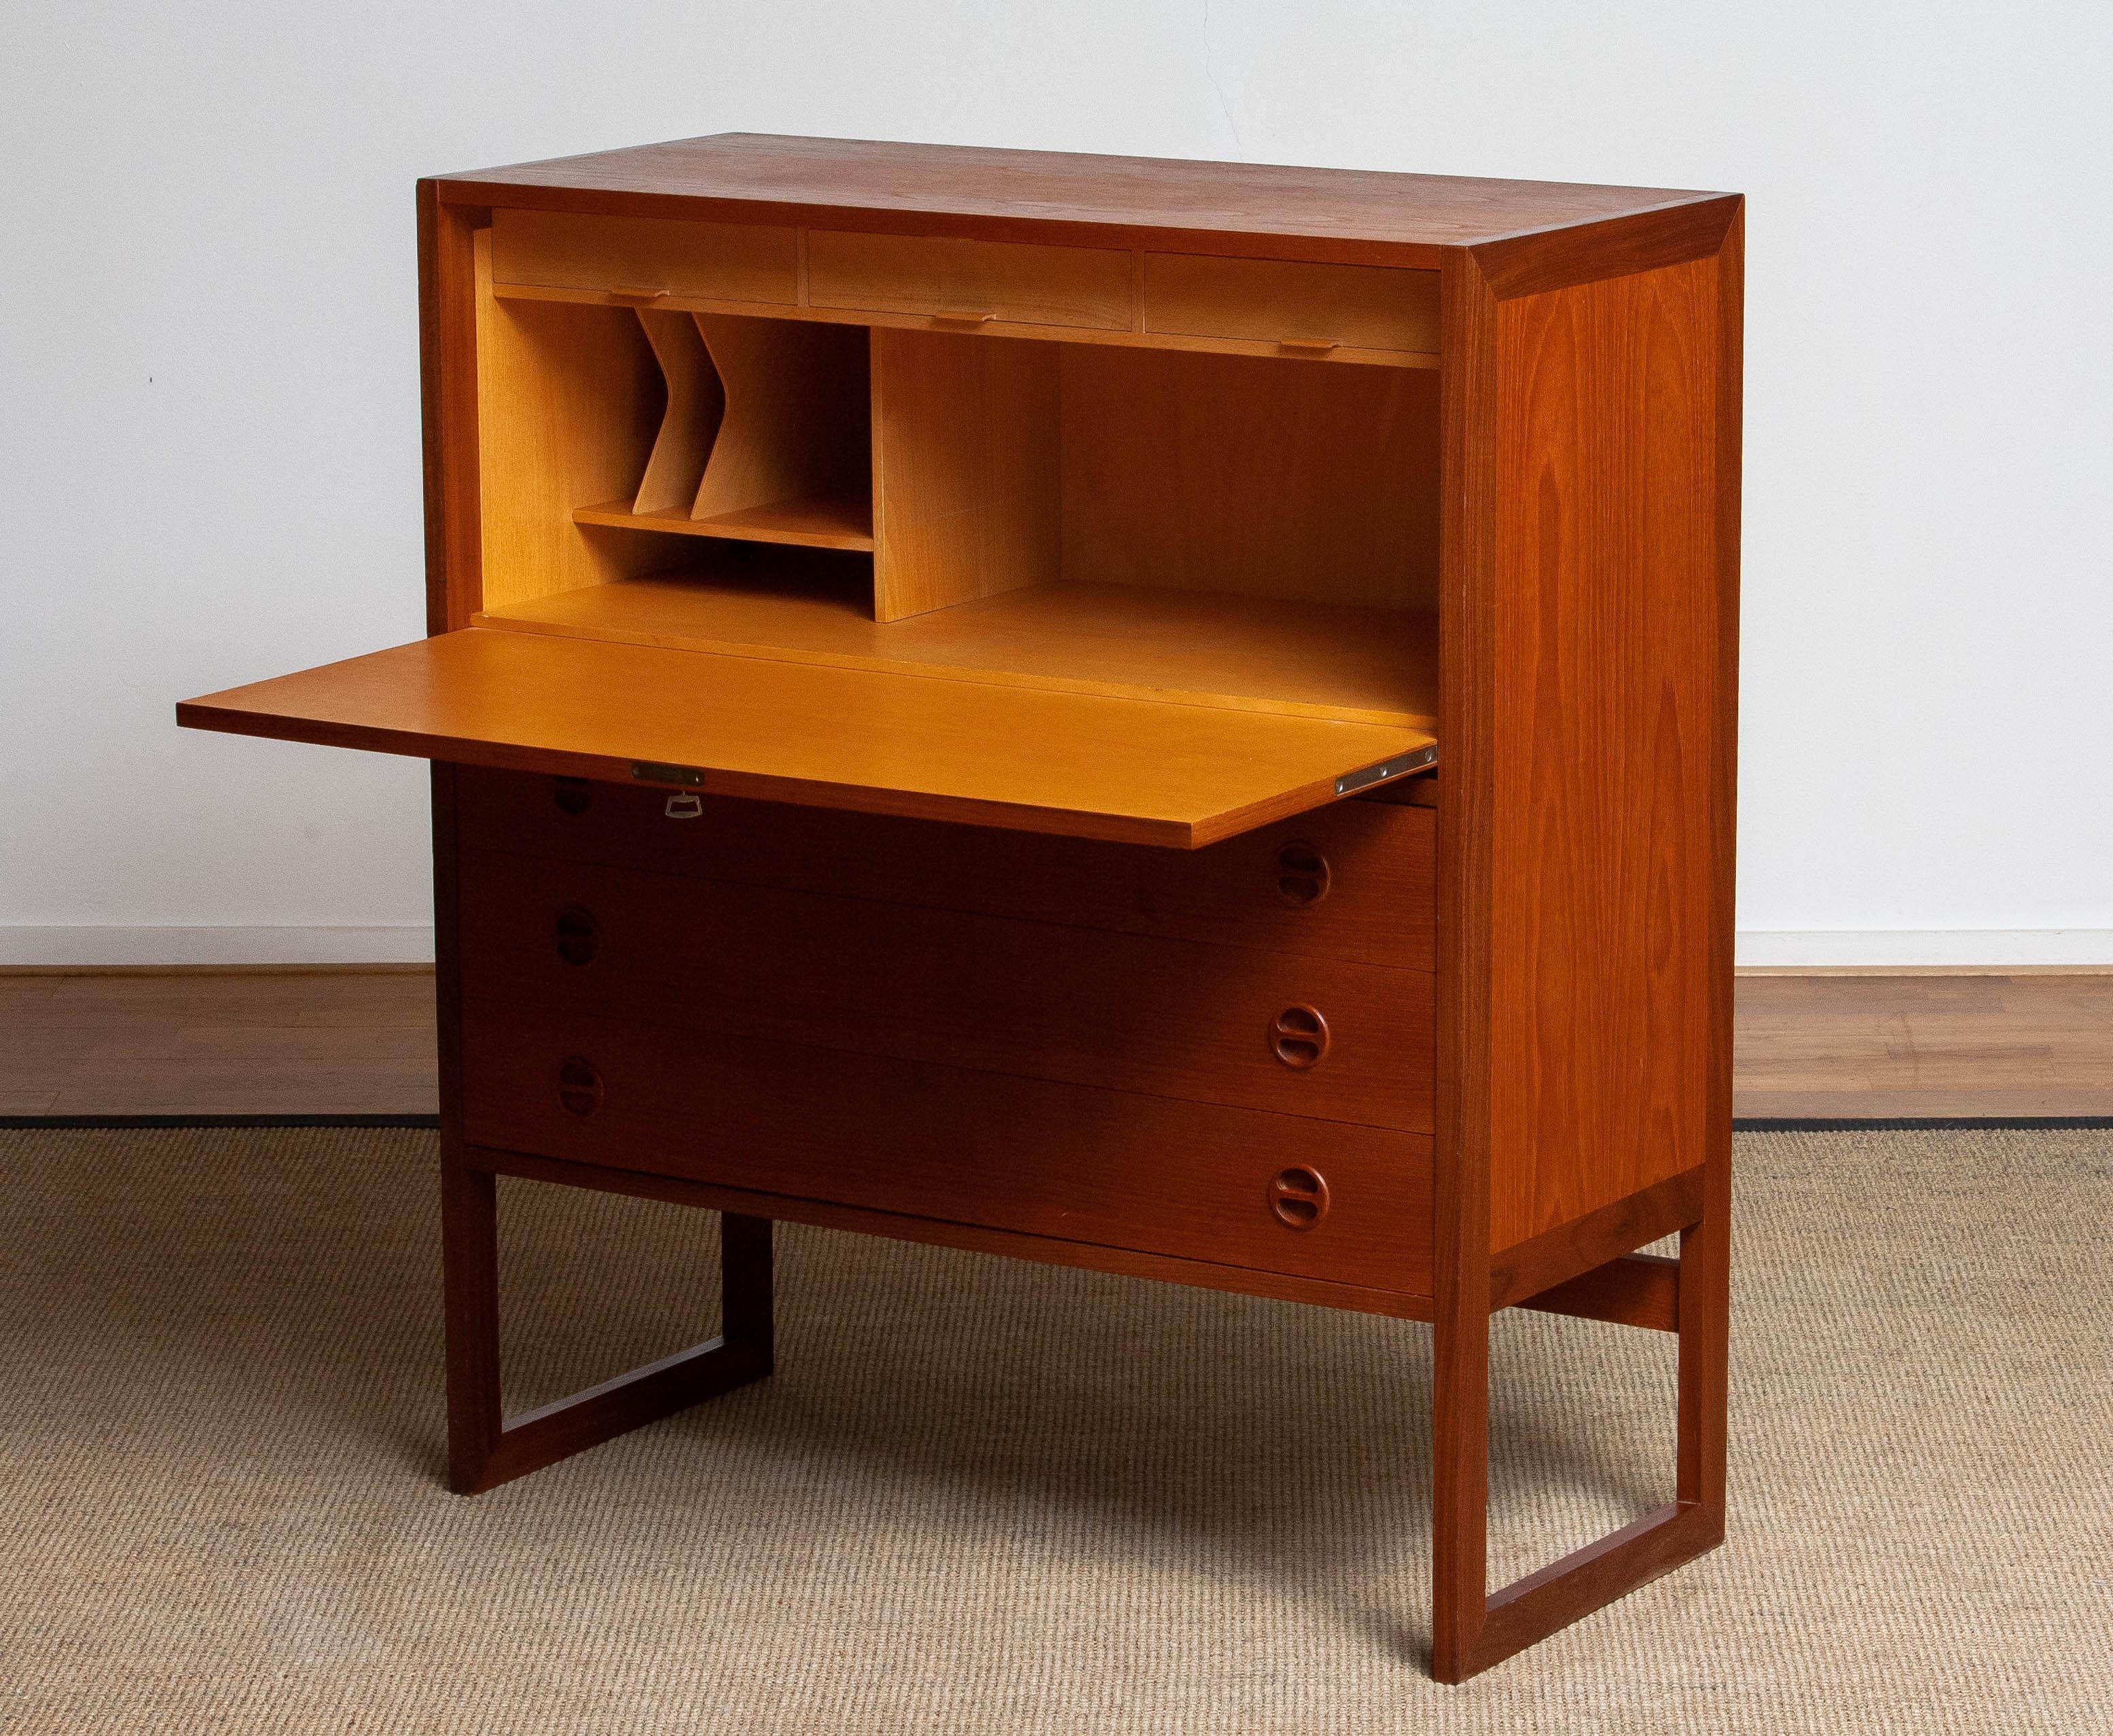 Beech 1950's Swedish Desk / Secretaire / Vanity in Teak and Oak by Arne Wahl Iversen